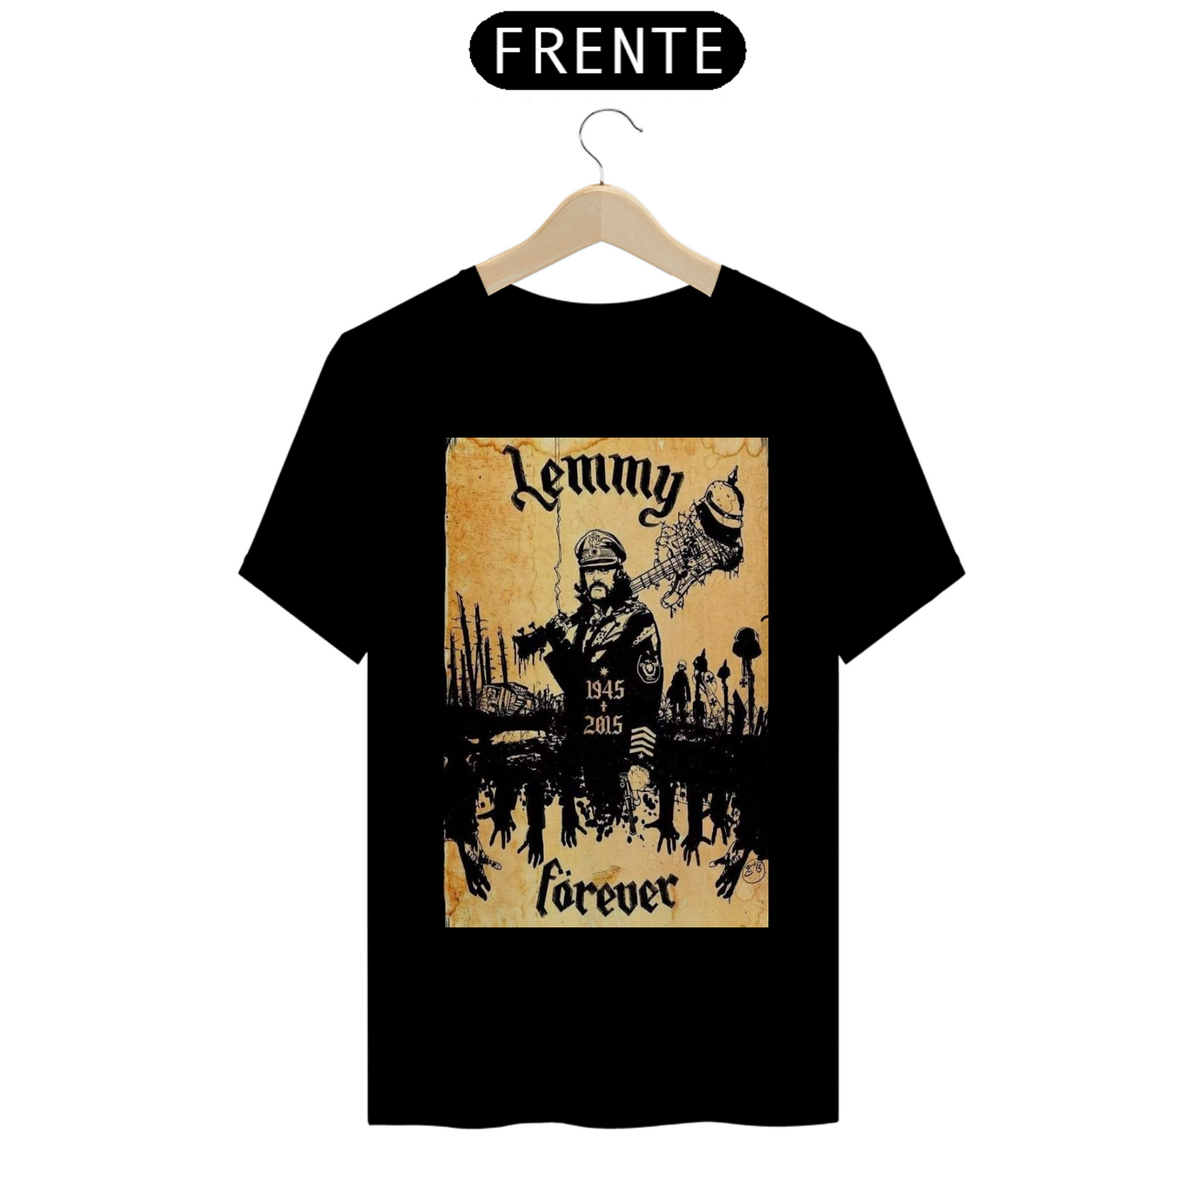 Nome do produto: Motörhead - Lemmy Forever